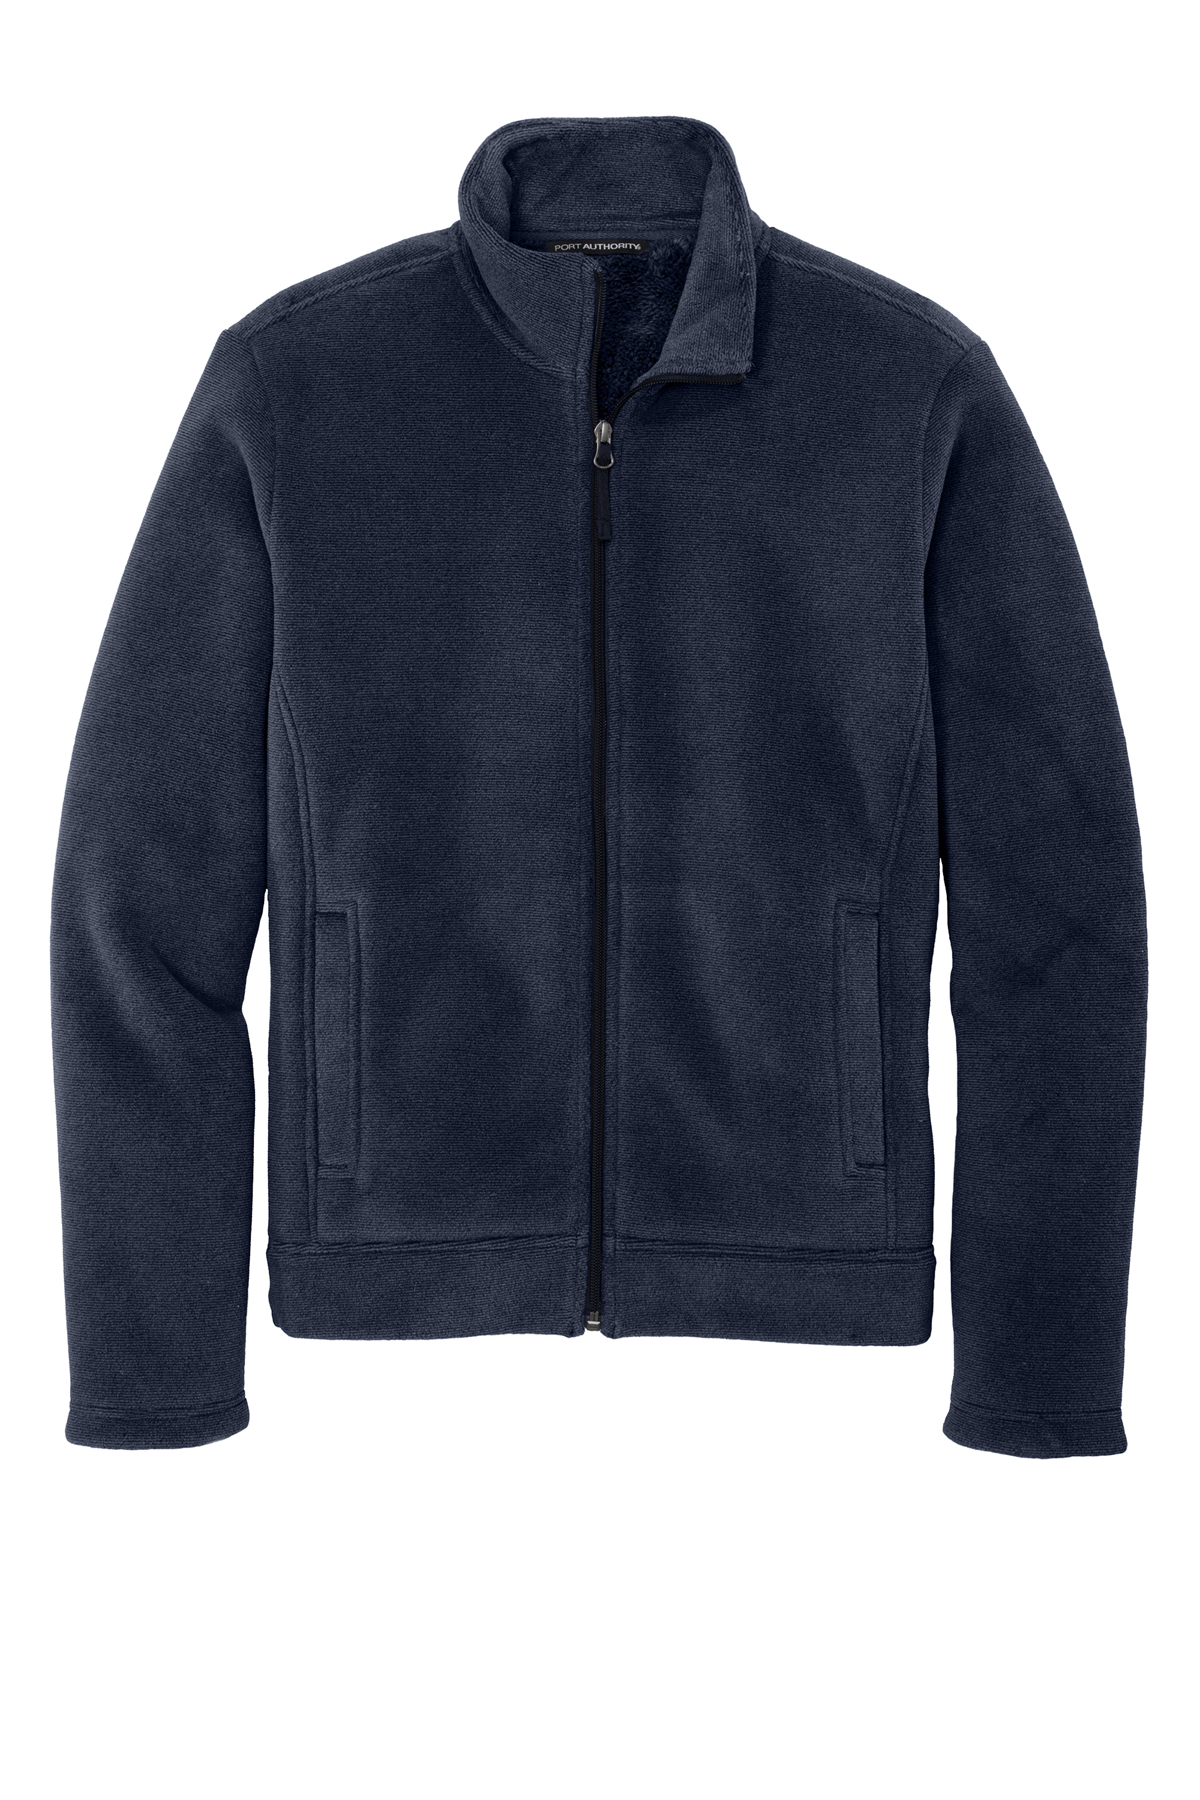 Port Authority Ultra Warm Brushed Fleece Jacket | Product | Port Authority